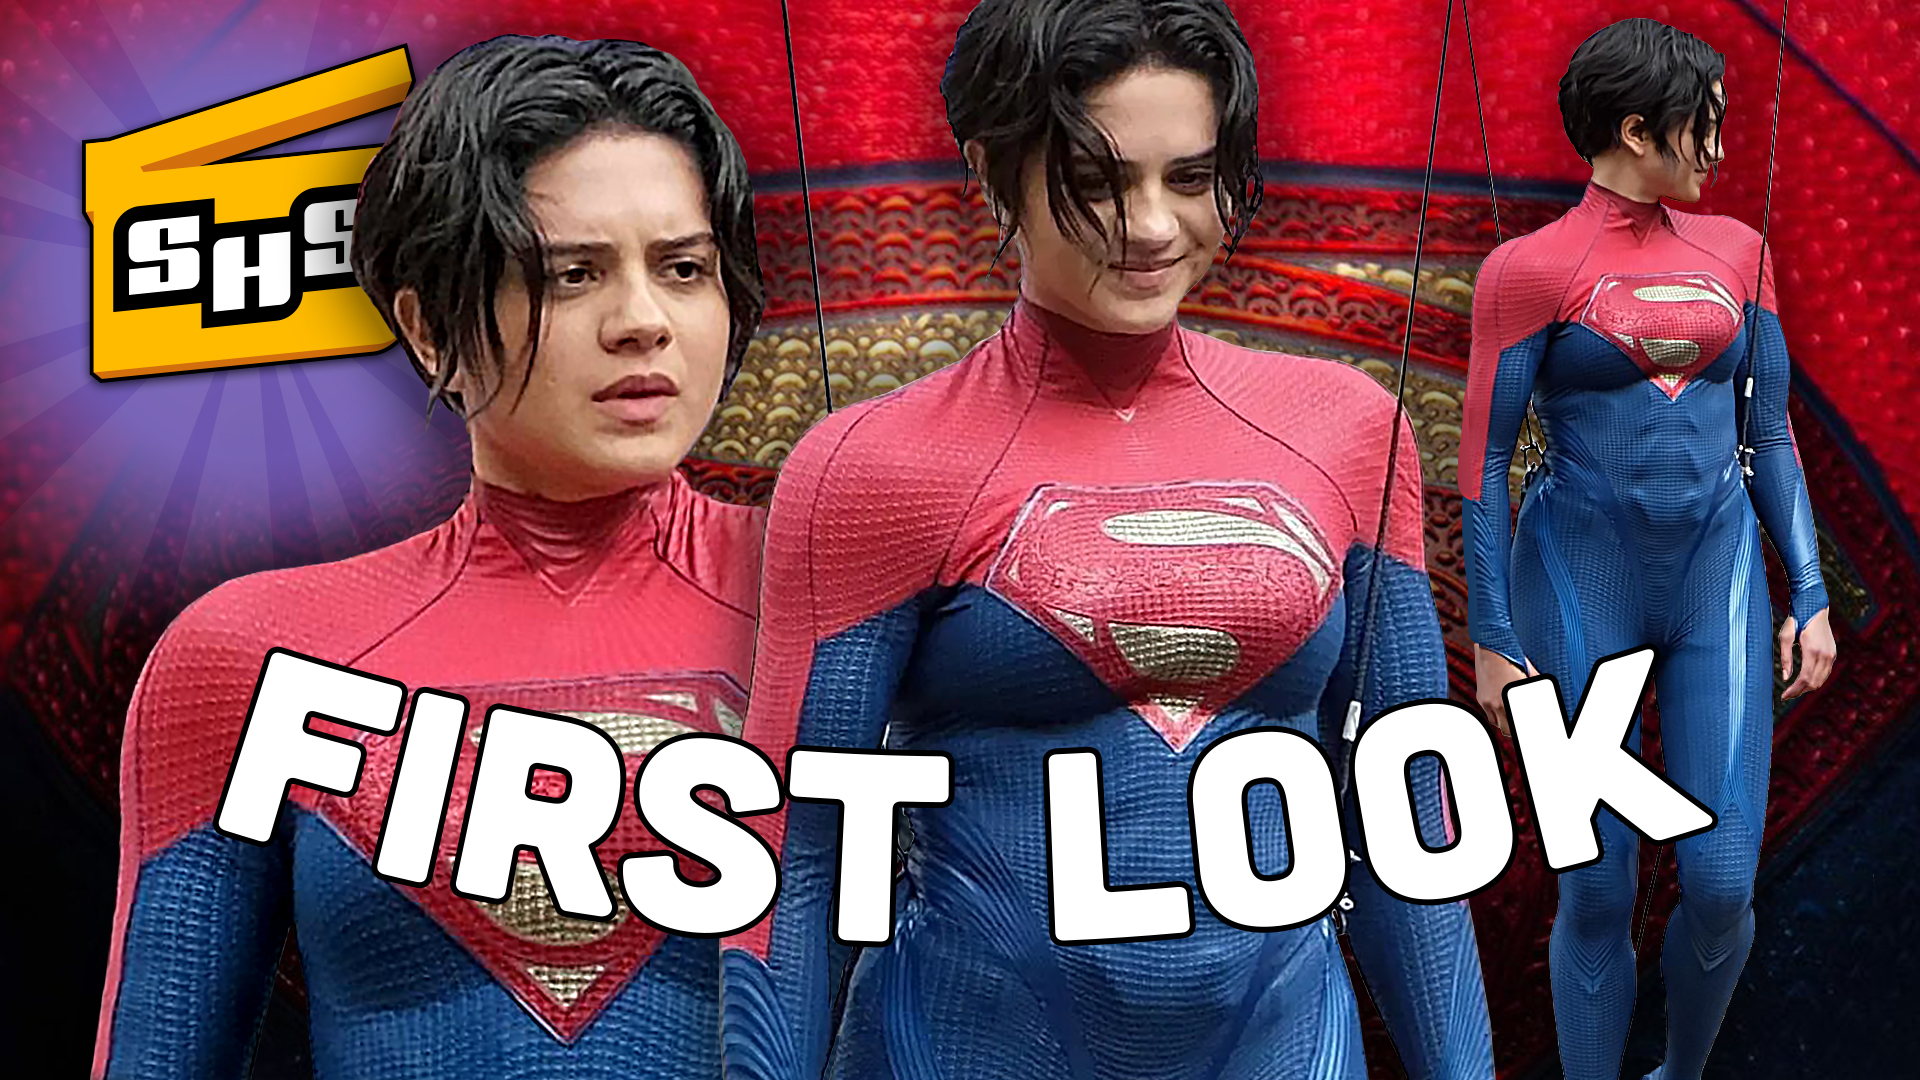 Superhero Slate Supergirl's Flash Suit & Disney+ on Wednesdays